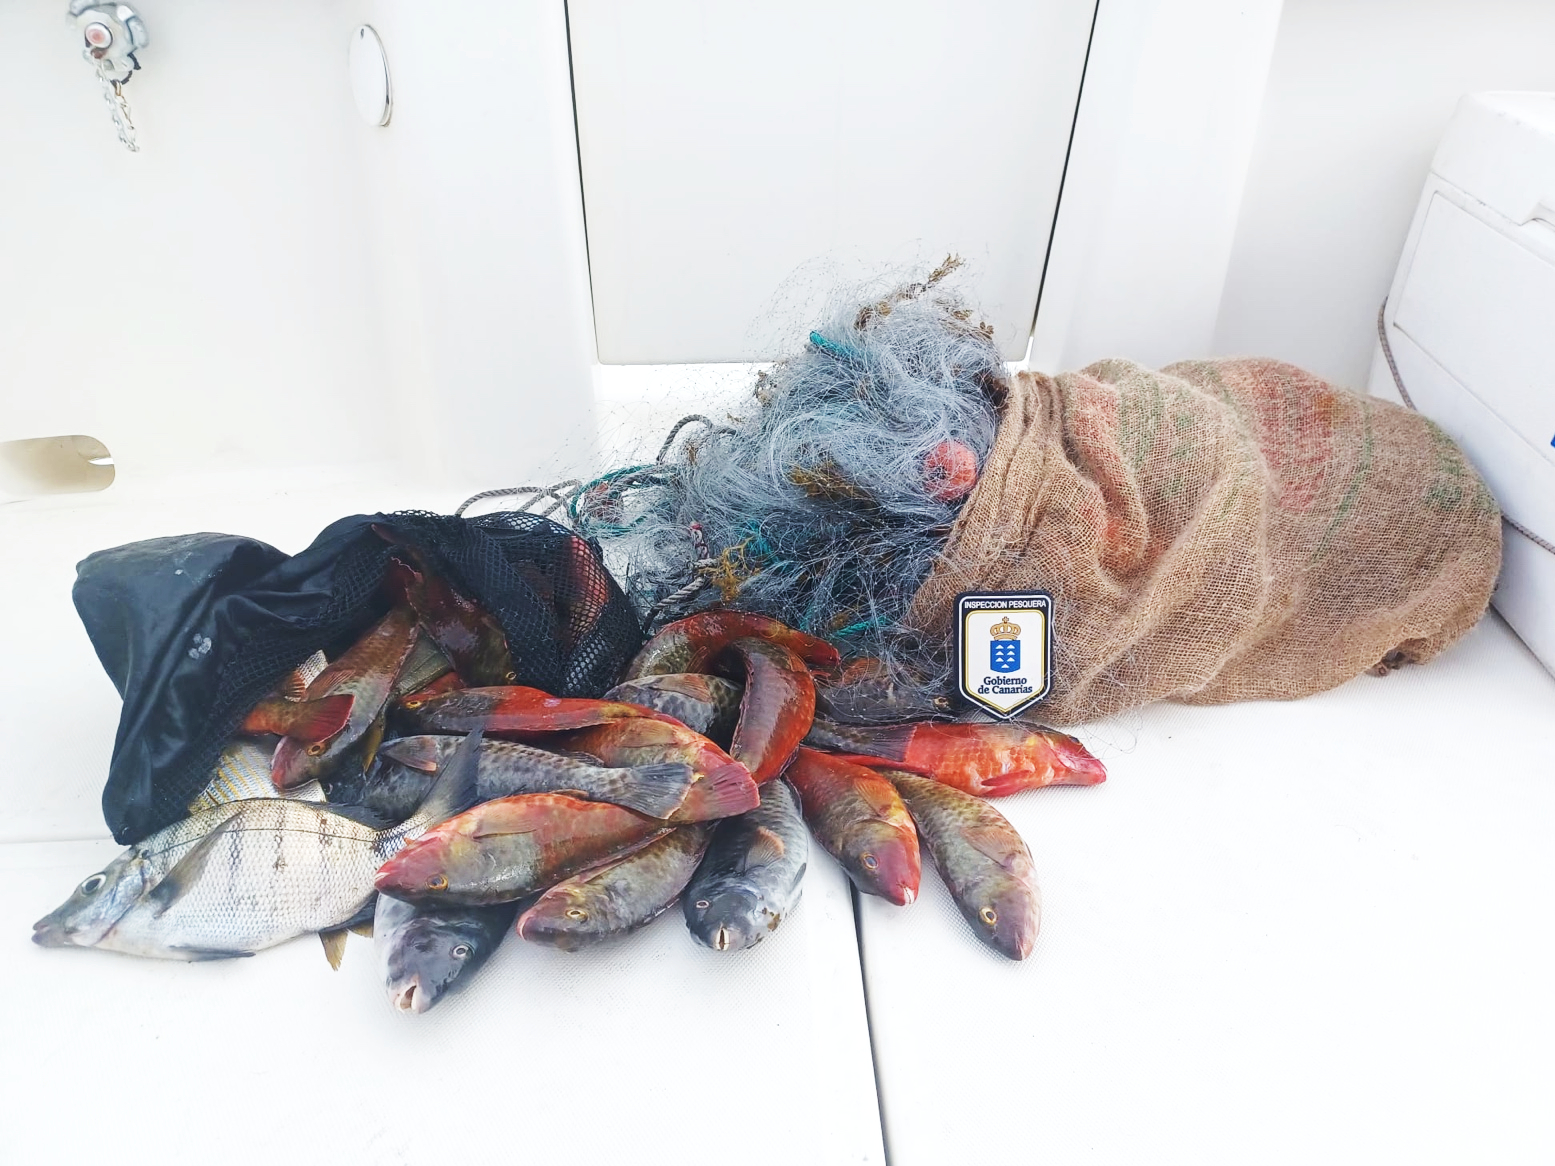 Inspección Pesquera intercepta en Tenerife 10,2 kilos de pescado capturado por furtivos utilizando artes profesionales